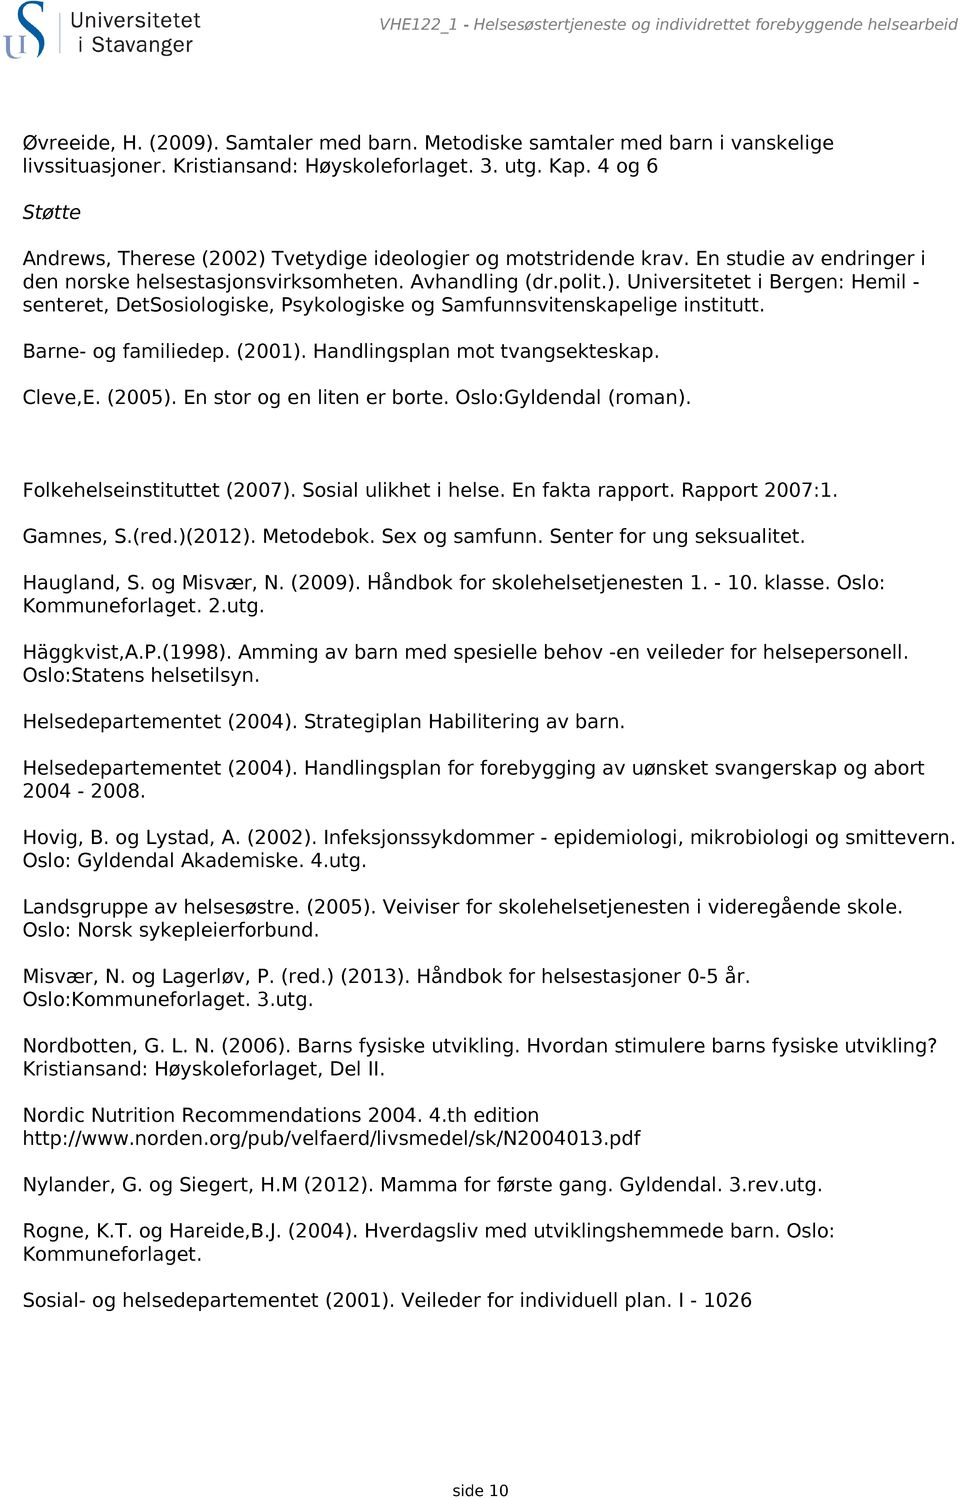 Avhandling (dr.polit.). Universitetet i Bergen: Hemil - senteret, DetSosiologiske, Psykologiske og Samfunnsvitenskapelige institutt. Barne- og familiedep. (2001). Handlingsplan mot tvangsekteskap.